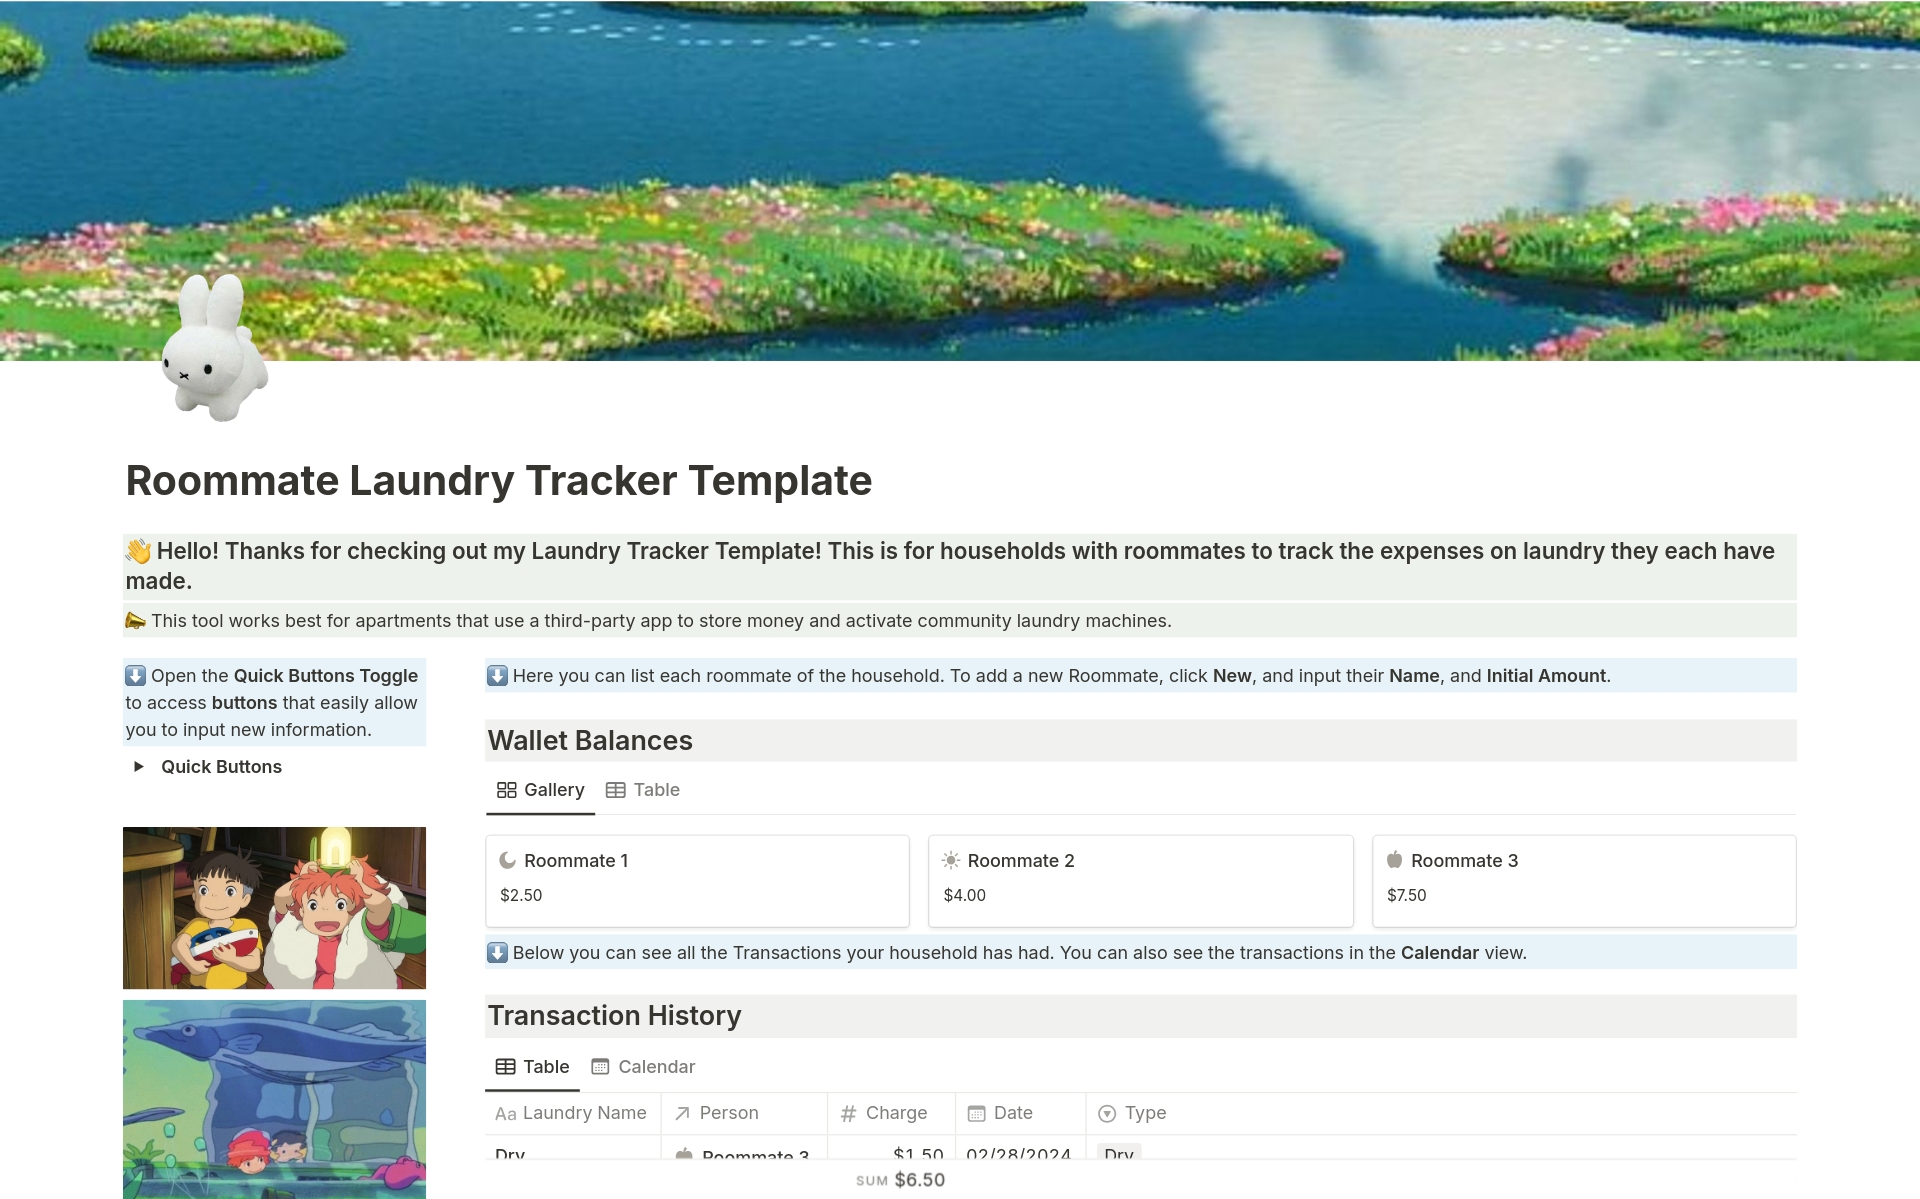 Uma prévia do modelo para Roommate Laundry Expense Tracker